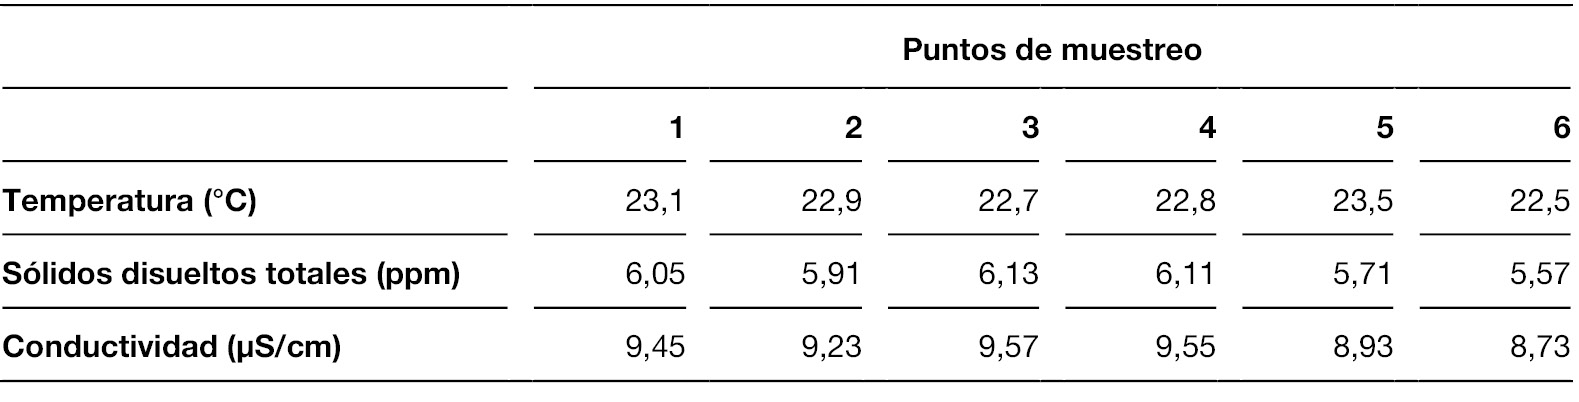 Parámetros fisicoquímicos determinados en los seis puntos del muestreo participativo en el río Tacuarembó